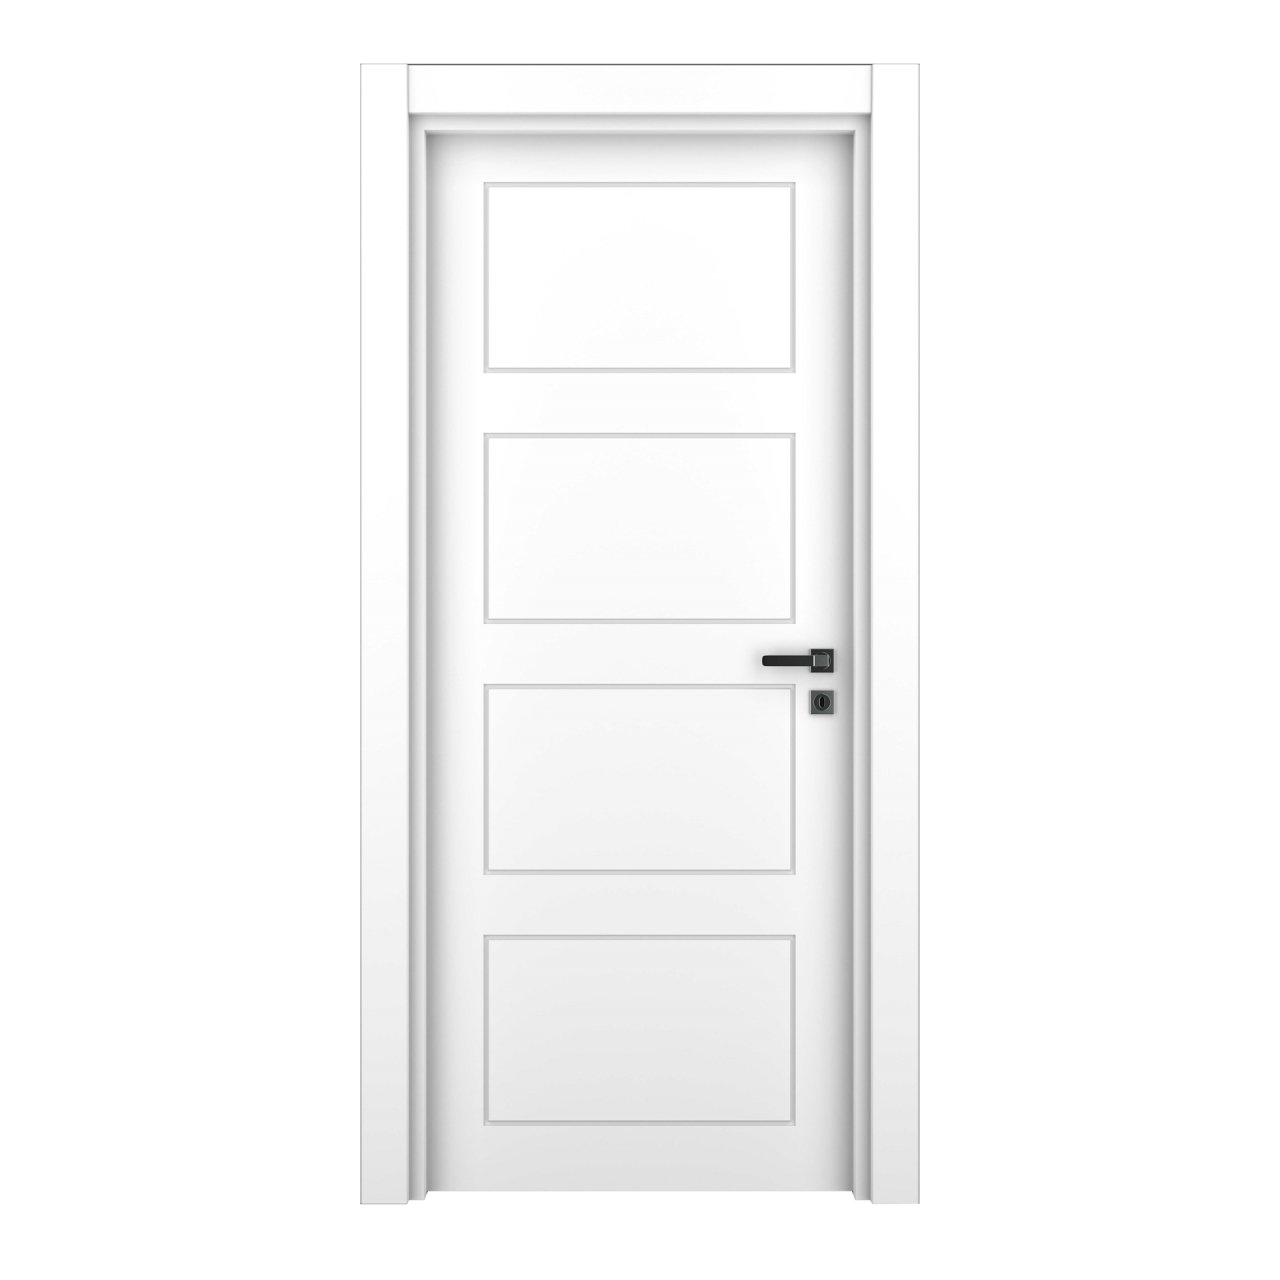 Межкомнатная дверь Сиена ДГ, массив сосны, эмаль белый жемчуг